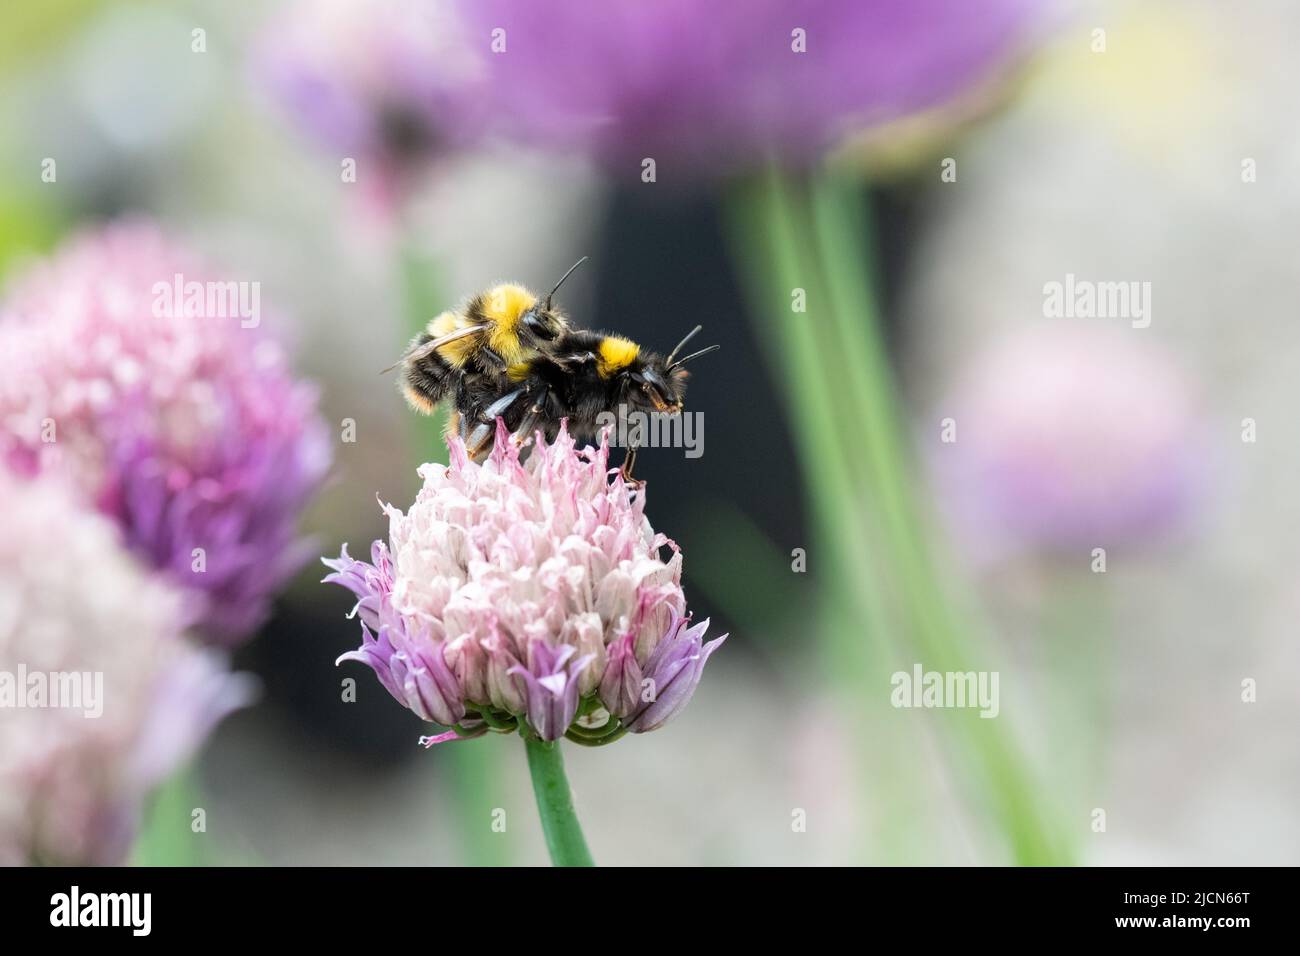 Accouplement des bourdons - bombus partorum (bourdons précoces) accouplement sur la fleur de la ruche - Royaume-Uni Banque D'Images